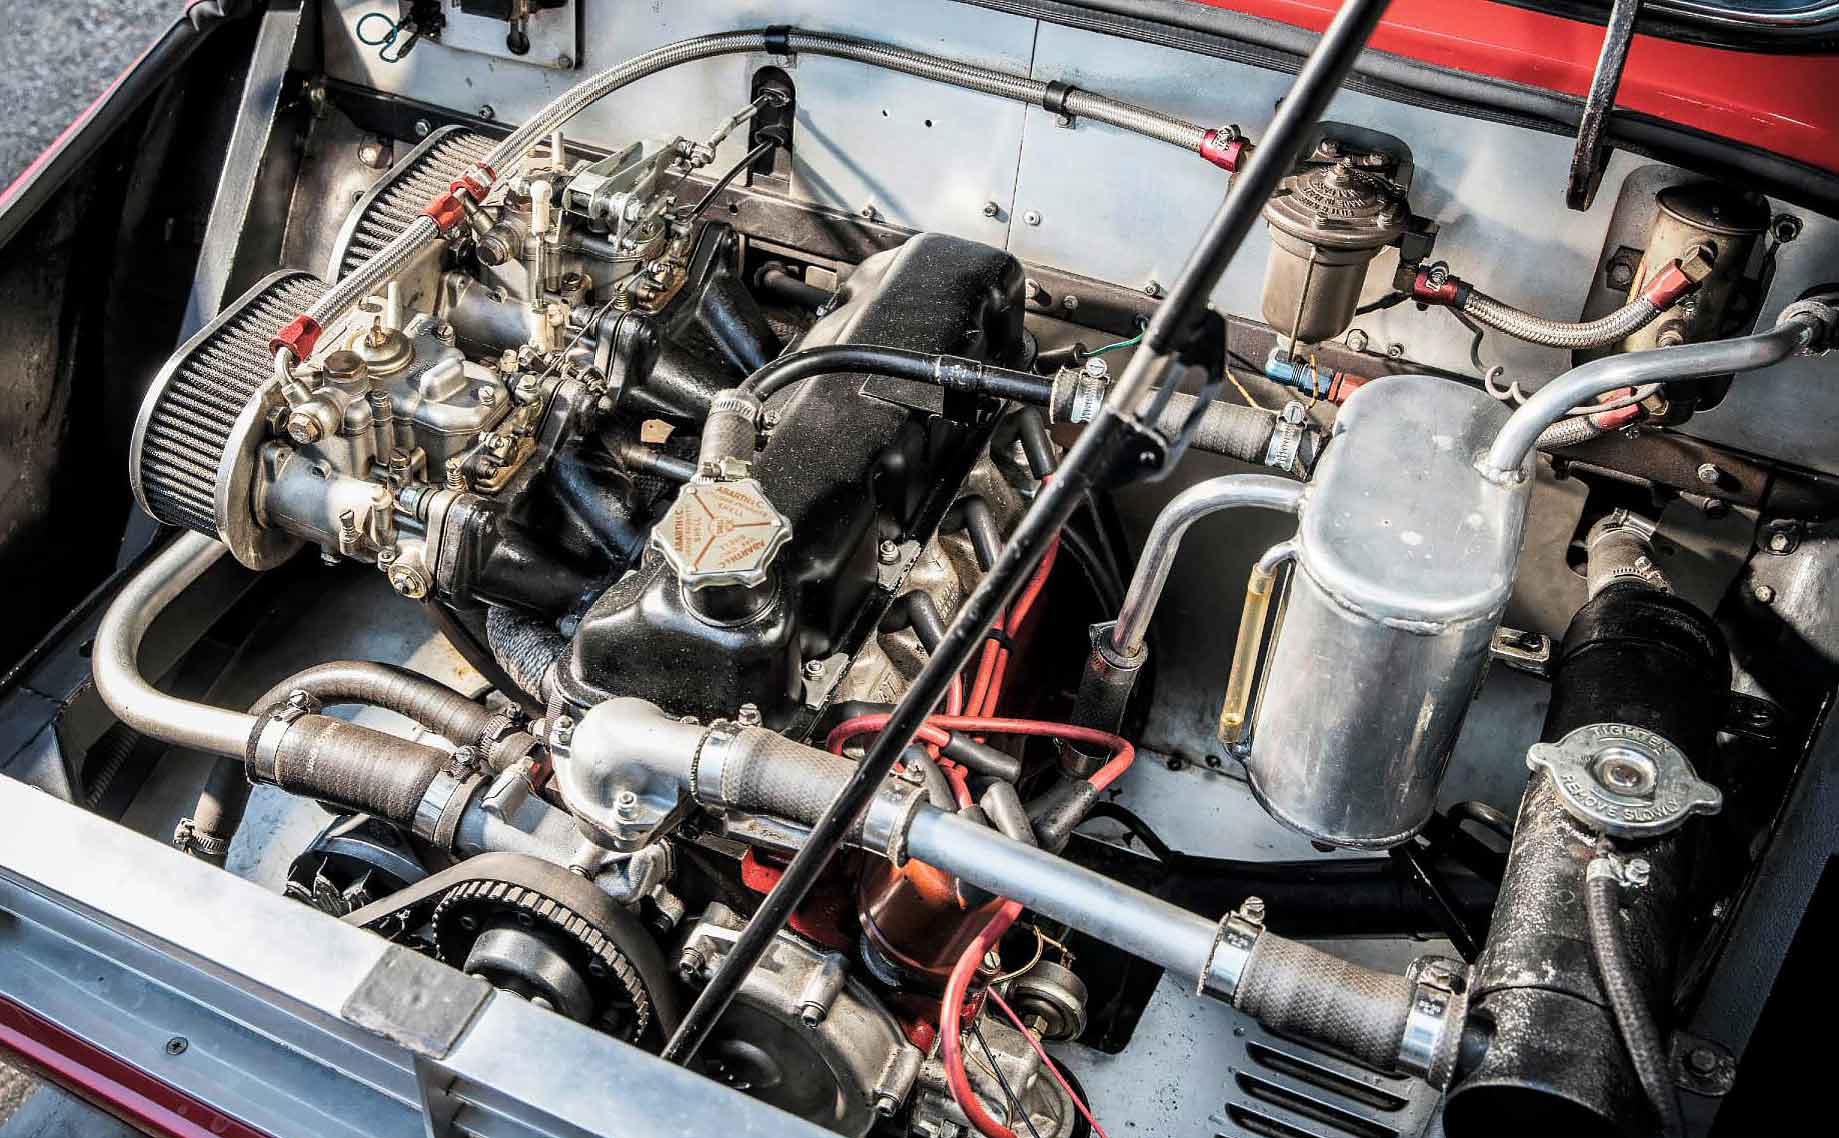 1968 Radbourne Abarth 1300 engine